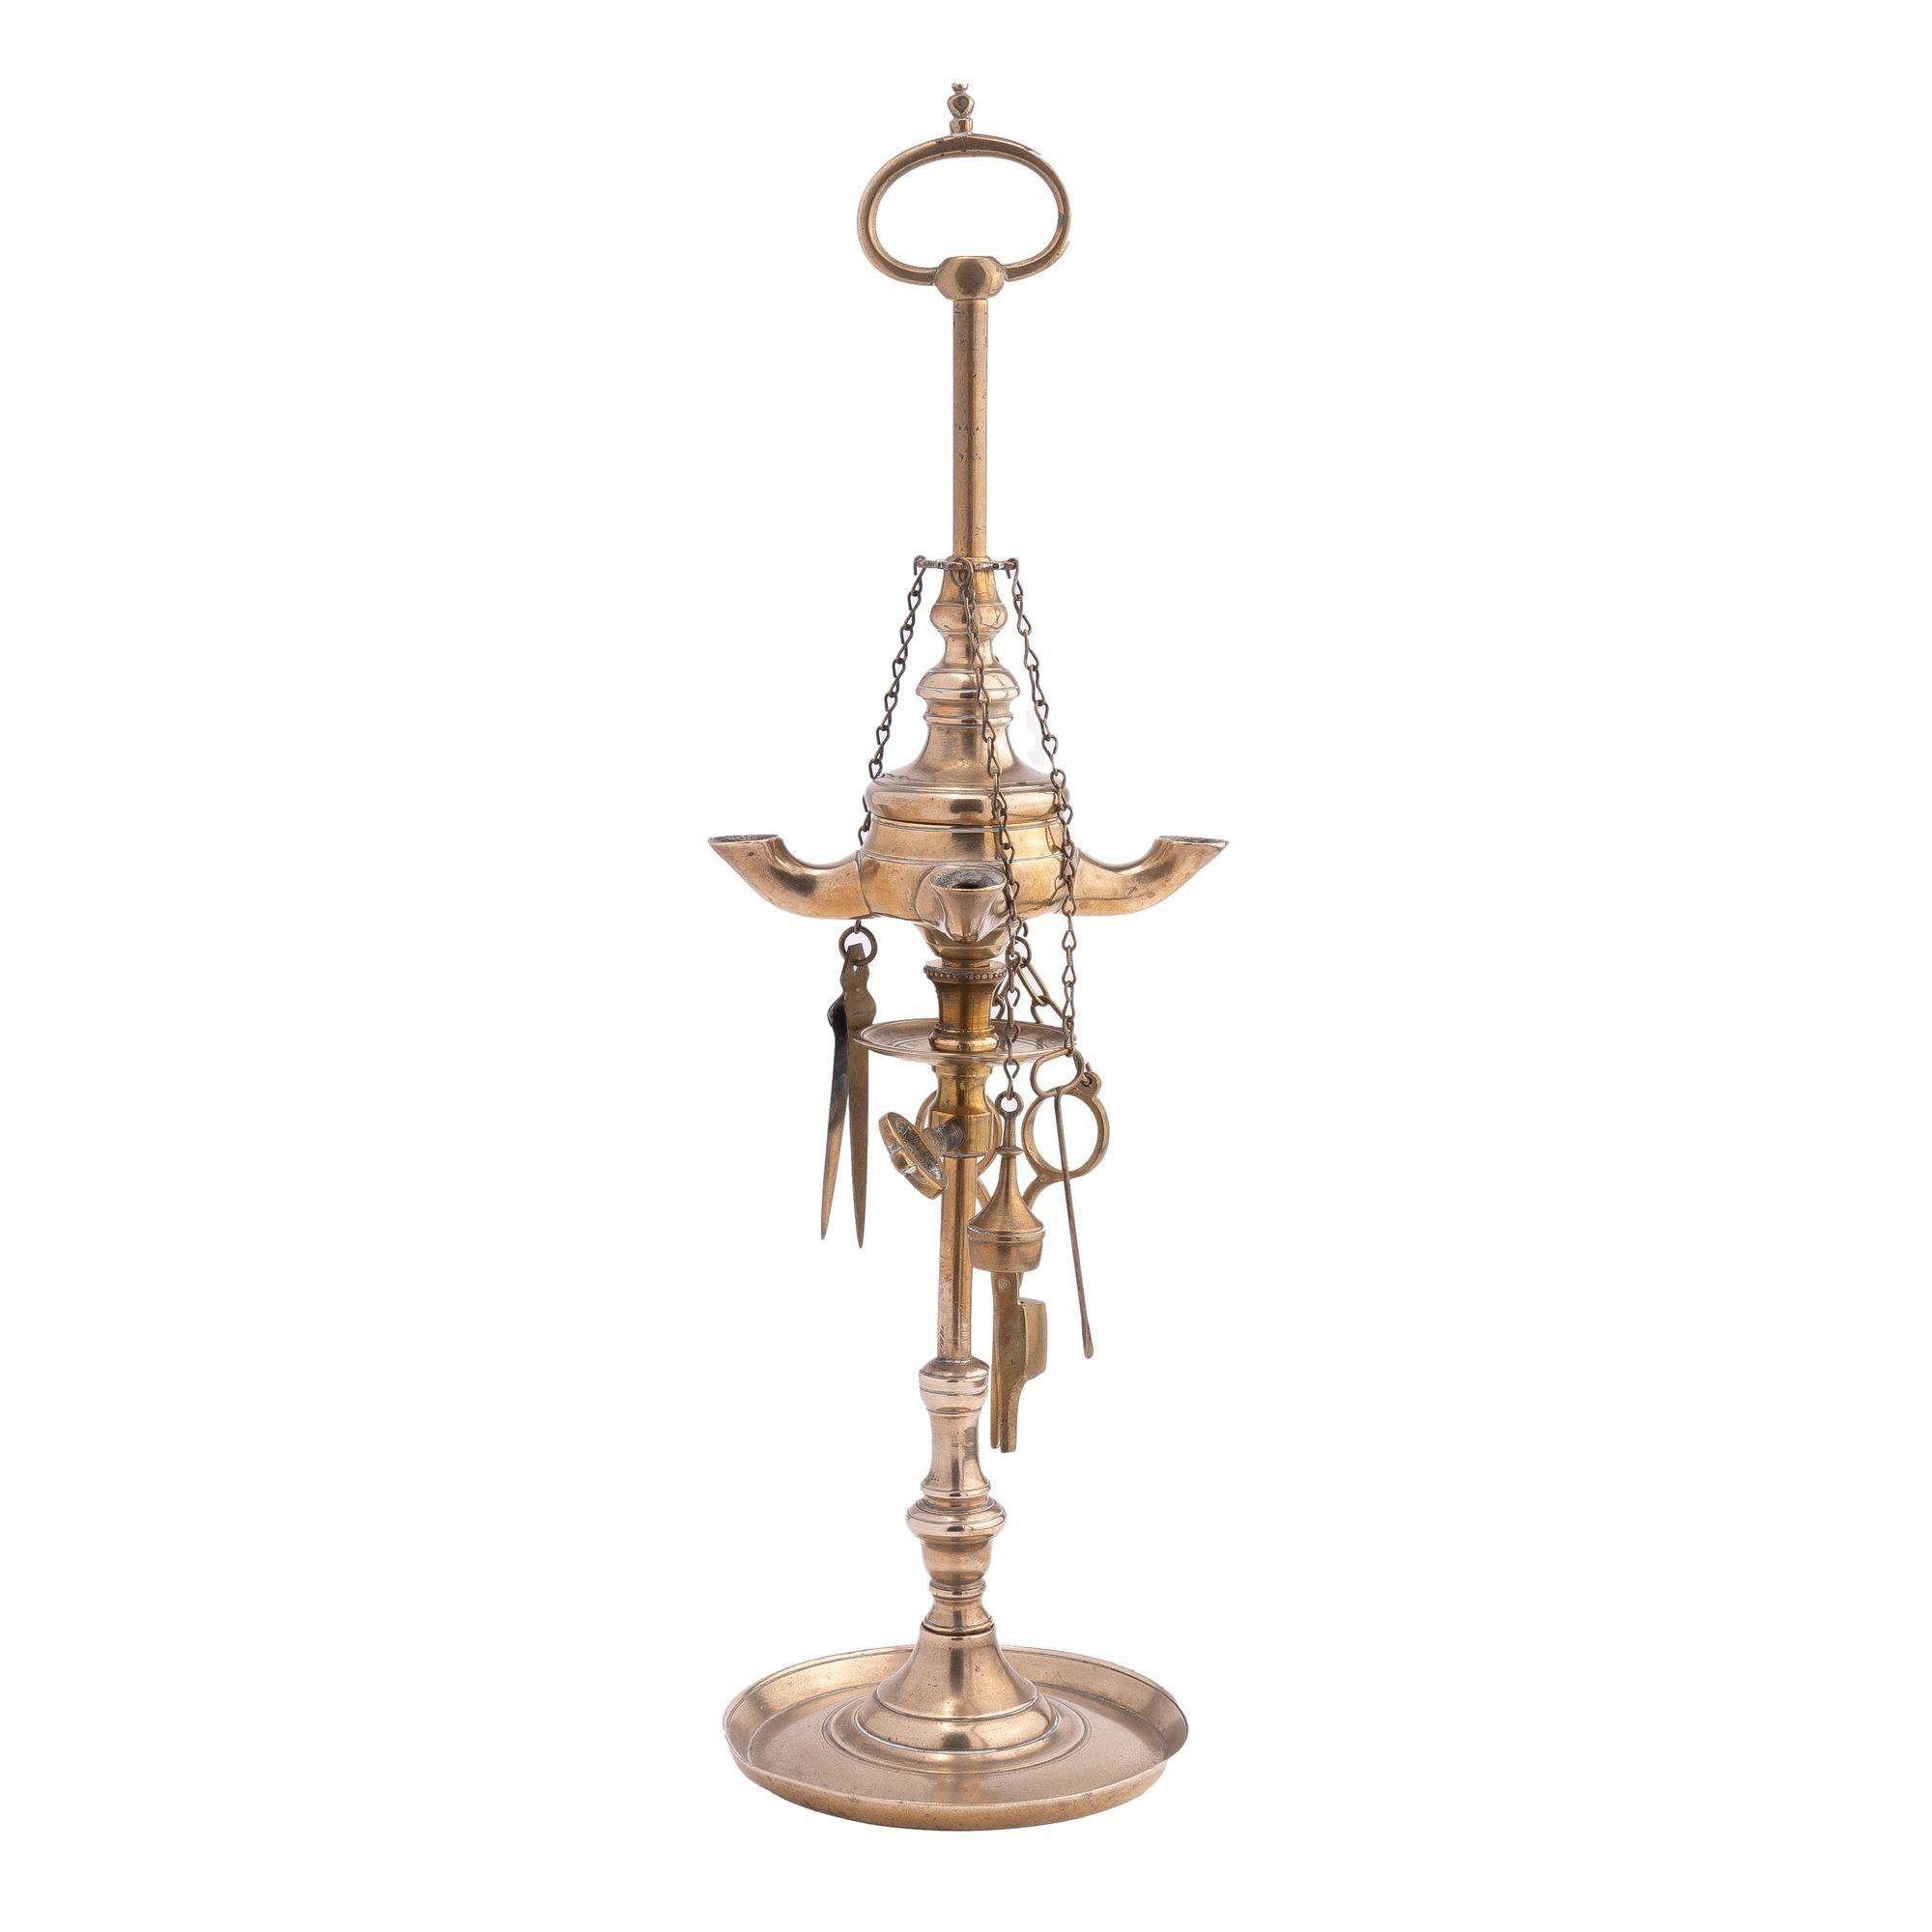 Lampe à huile Lucerne à quatre brûleurs en laiton moulé, avec quatre outils de mèche suspendus, une coupelle de collecte réglable sous le front, et une poignée de transport à boucle en haut de la tige.

Italie, vers 1810.